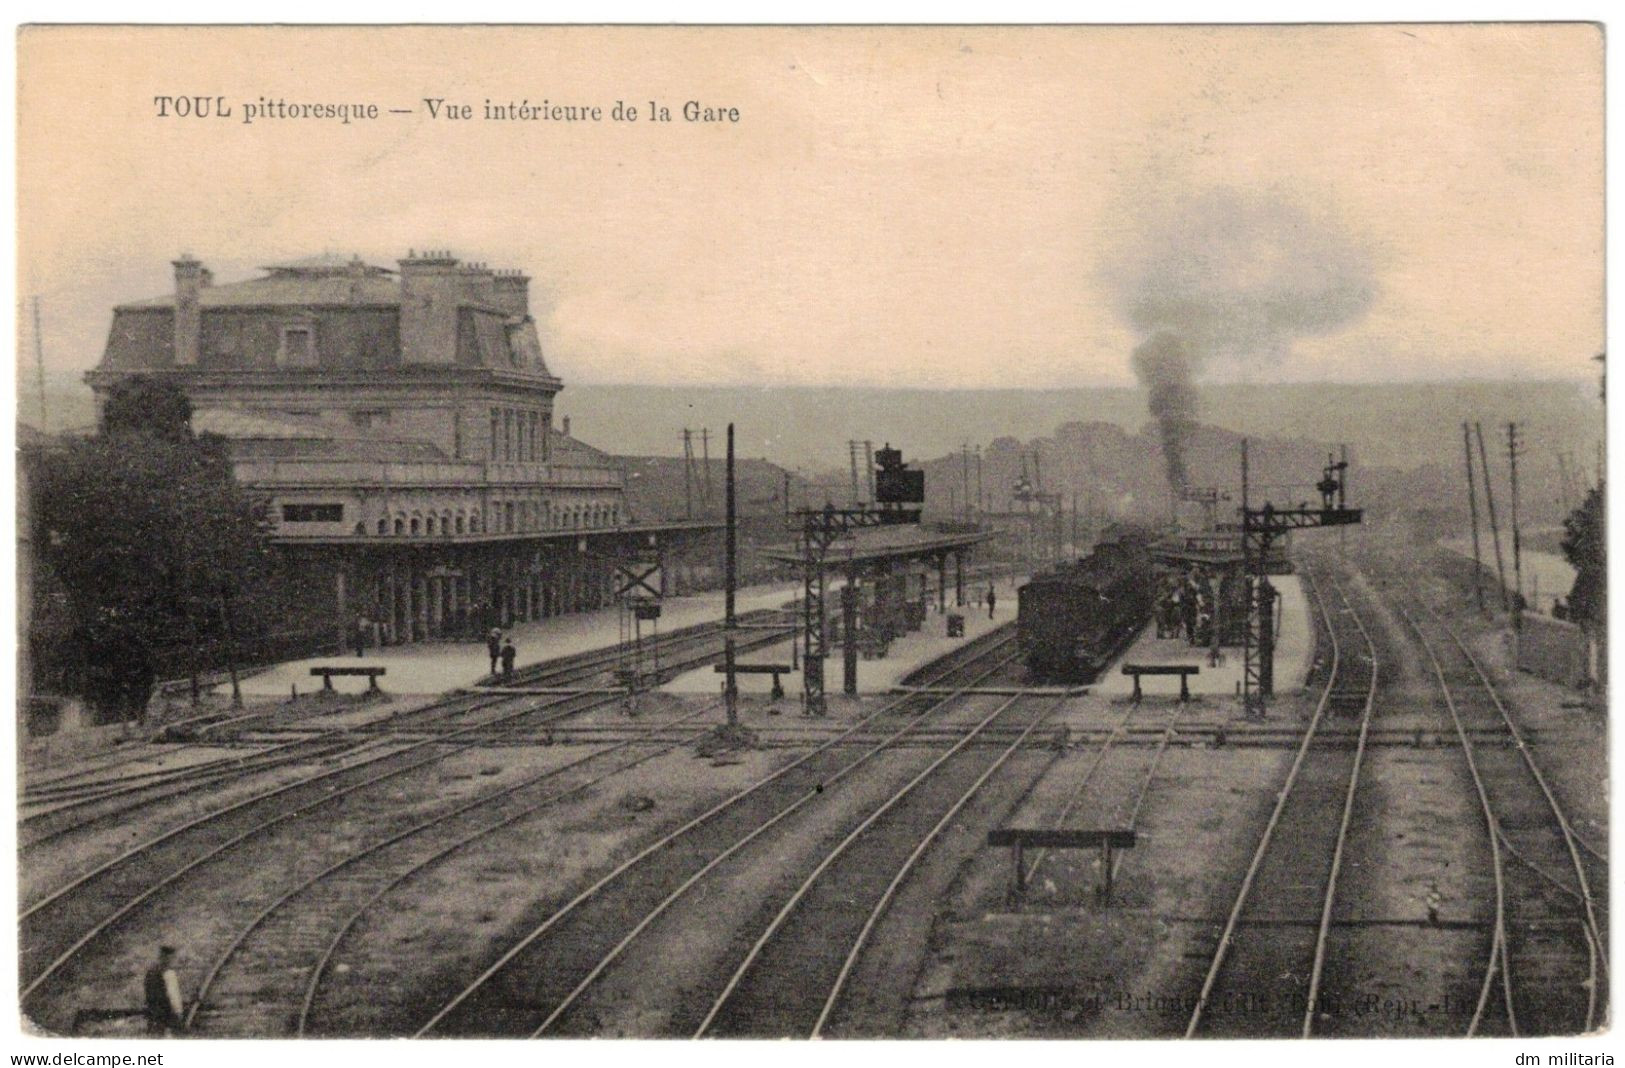 54 - CPA 1919 : TOUL - VUE INTÉRIEUR DE LA GARE - TRAIN LOCOMOTIVE À VAPEUR EN GARE - MEURTHE-ET-MOSELLE - Stations With Trains